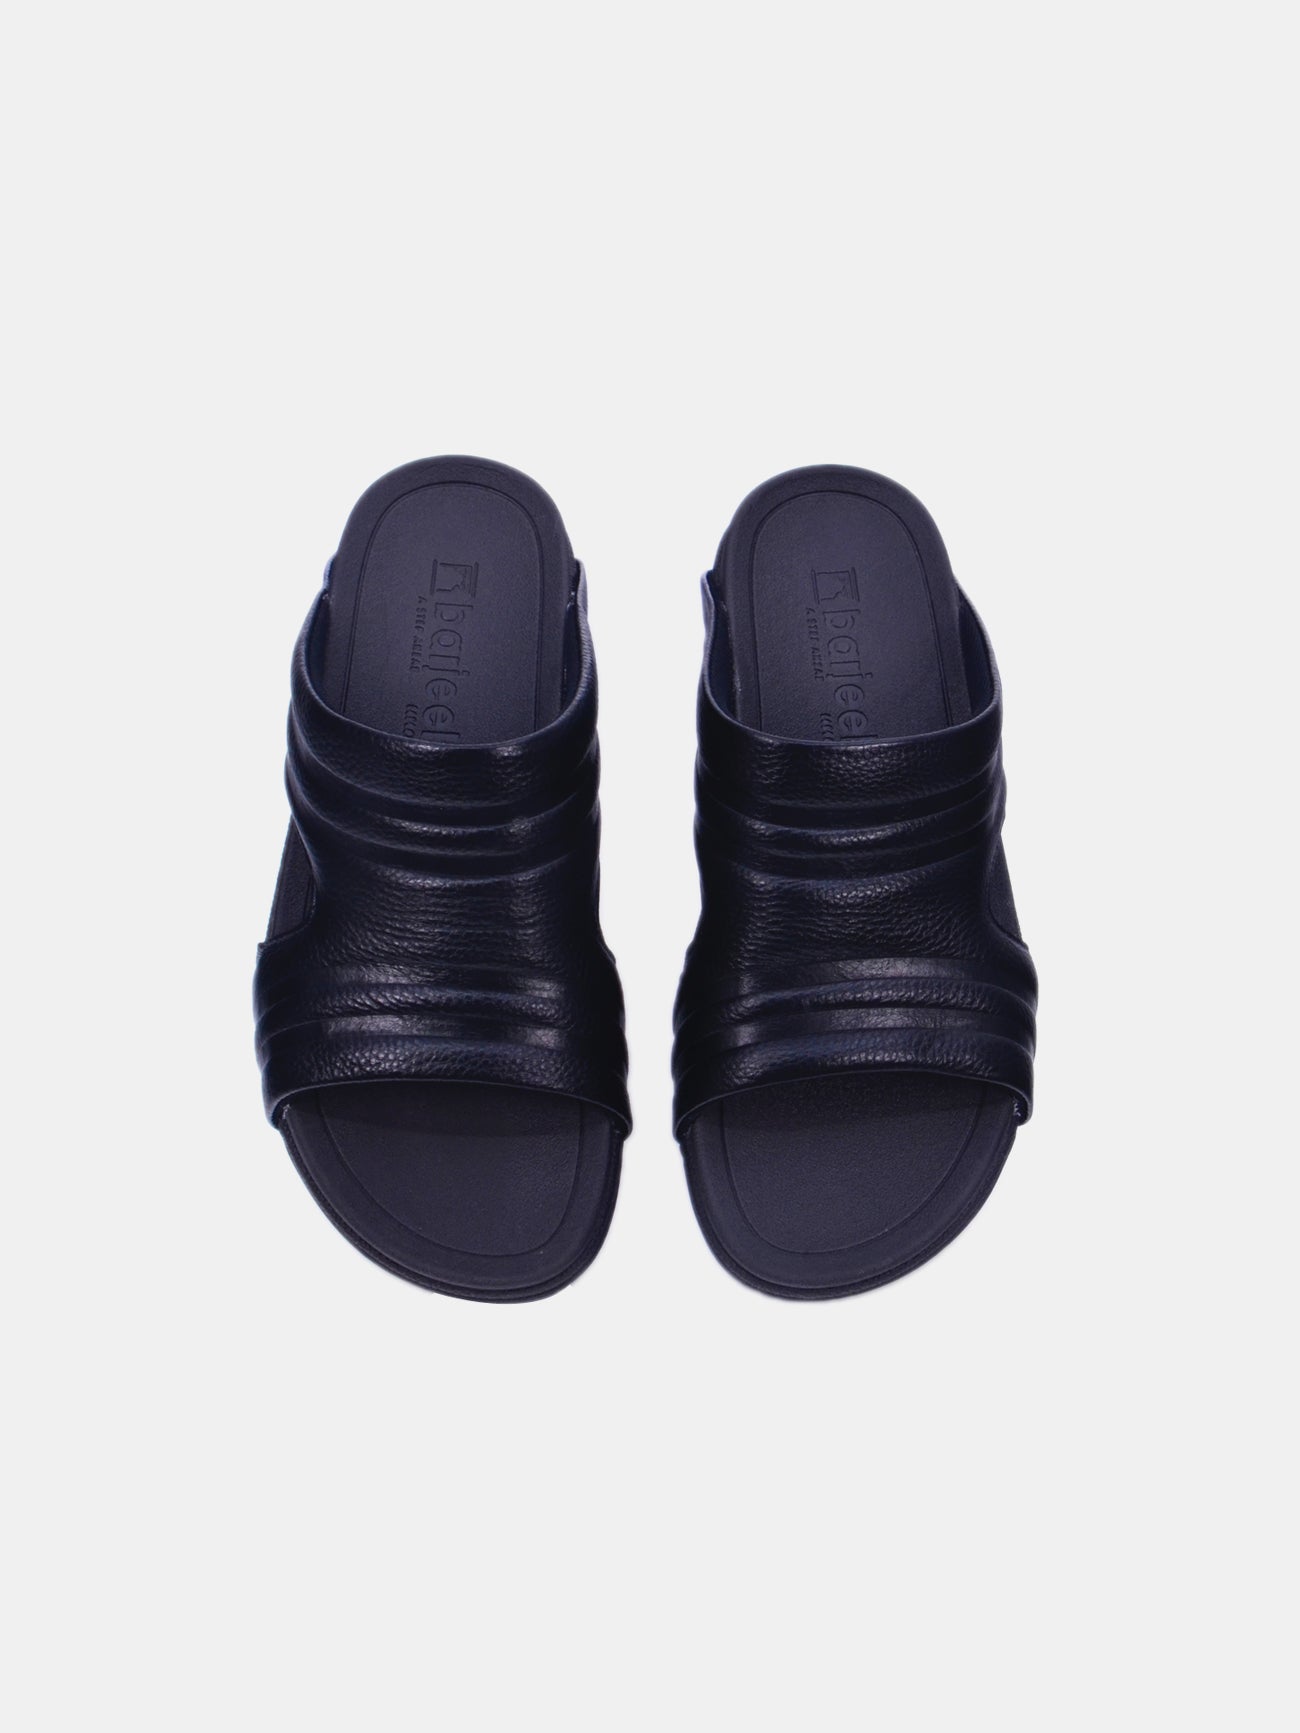 Barjeel Uno 20254 Men's Arabic Sandals #color_Black